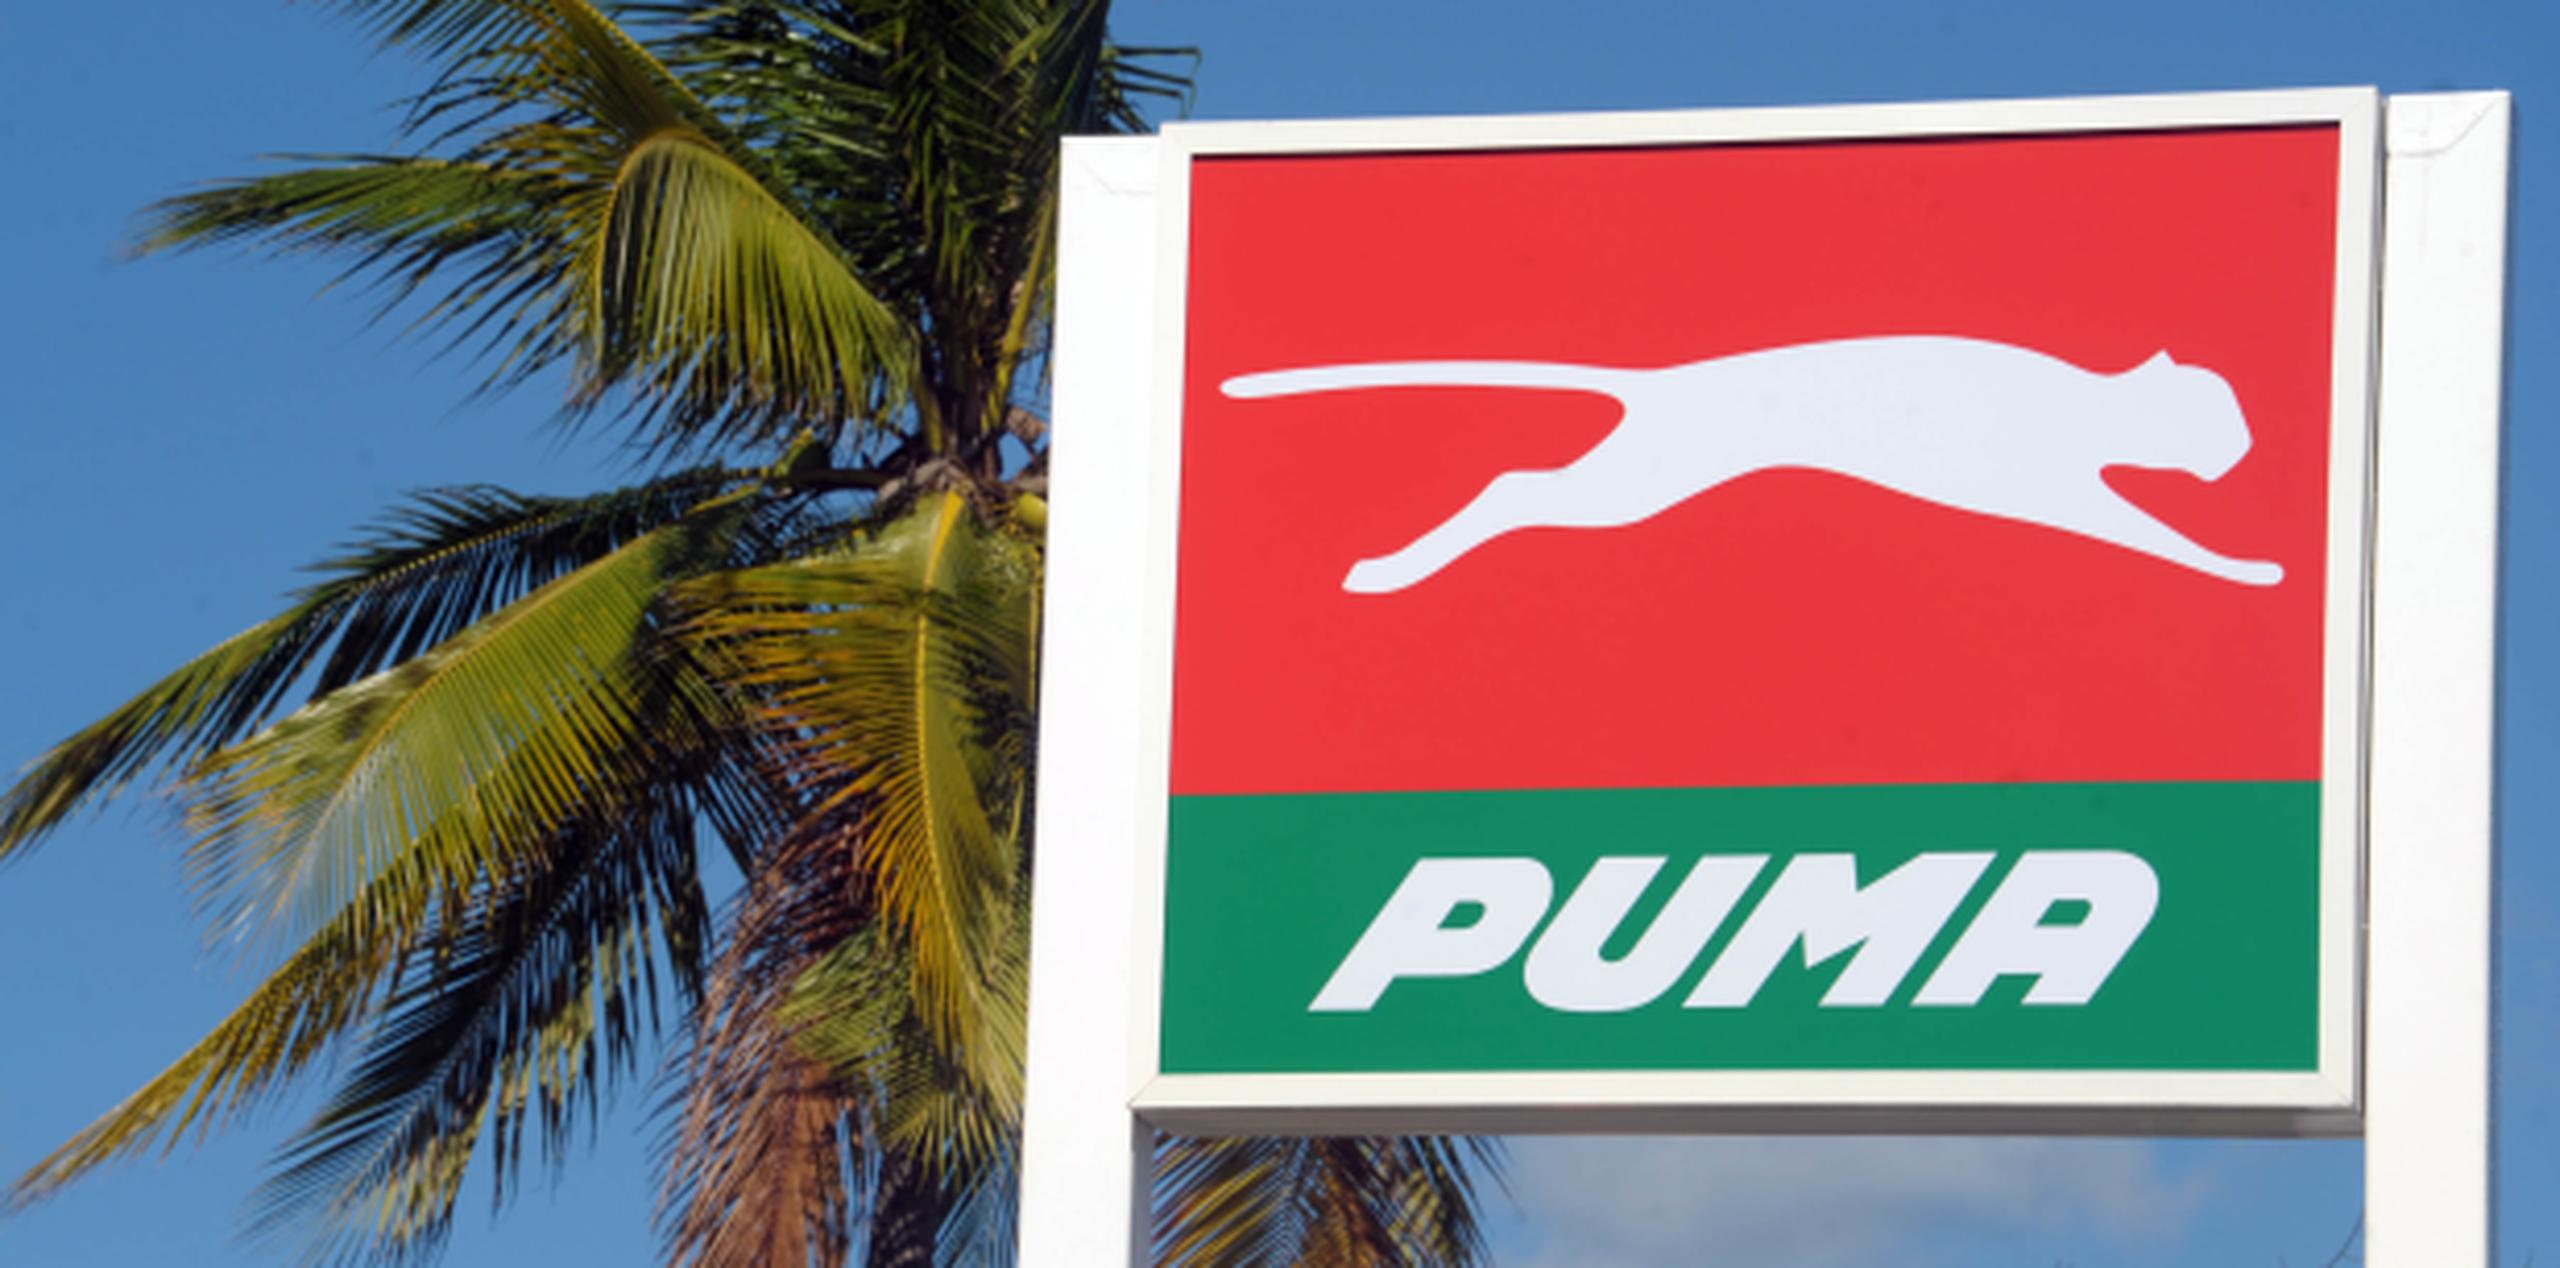 La gasolina regular de Puma arrojó 1.3 miligramos (mg) por litro y la premium, 1.9 mg por litro. El límite permitido por la EPA es 8.2554 mg por litro. (jose.rodriguez@gfrmedia.com)